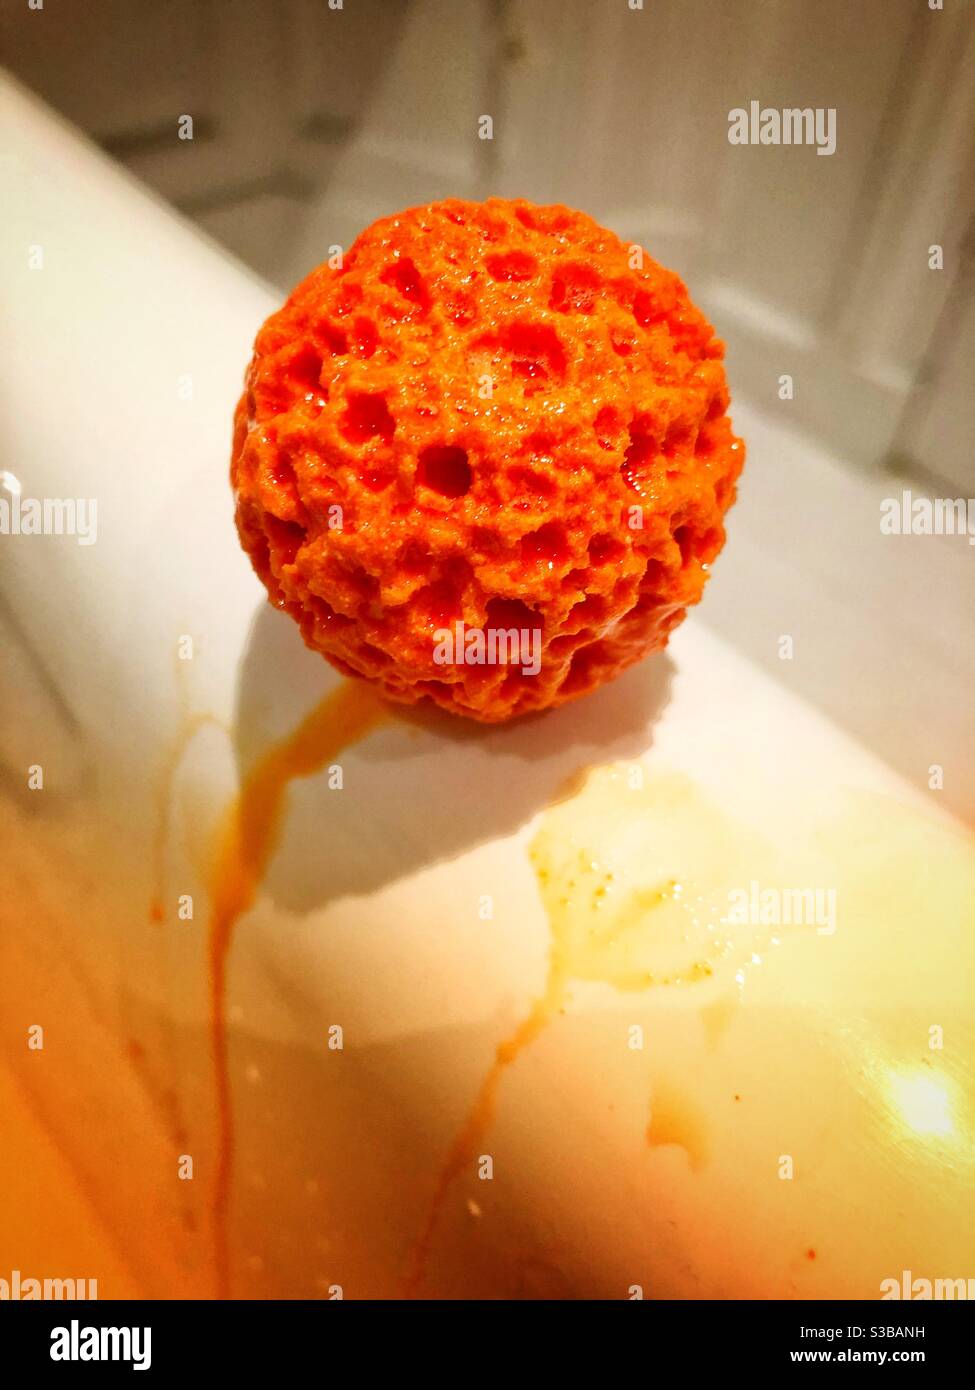 Orange flavoured bath bomb Stock Photo